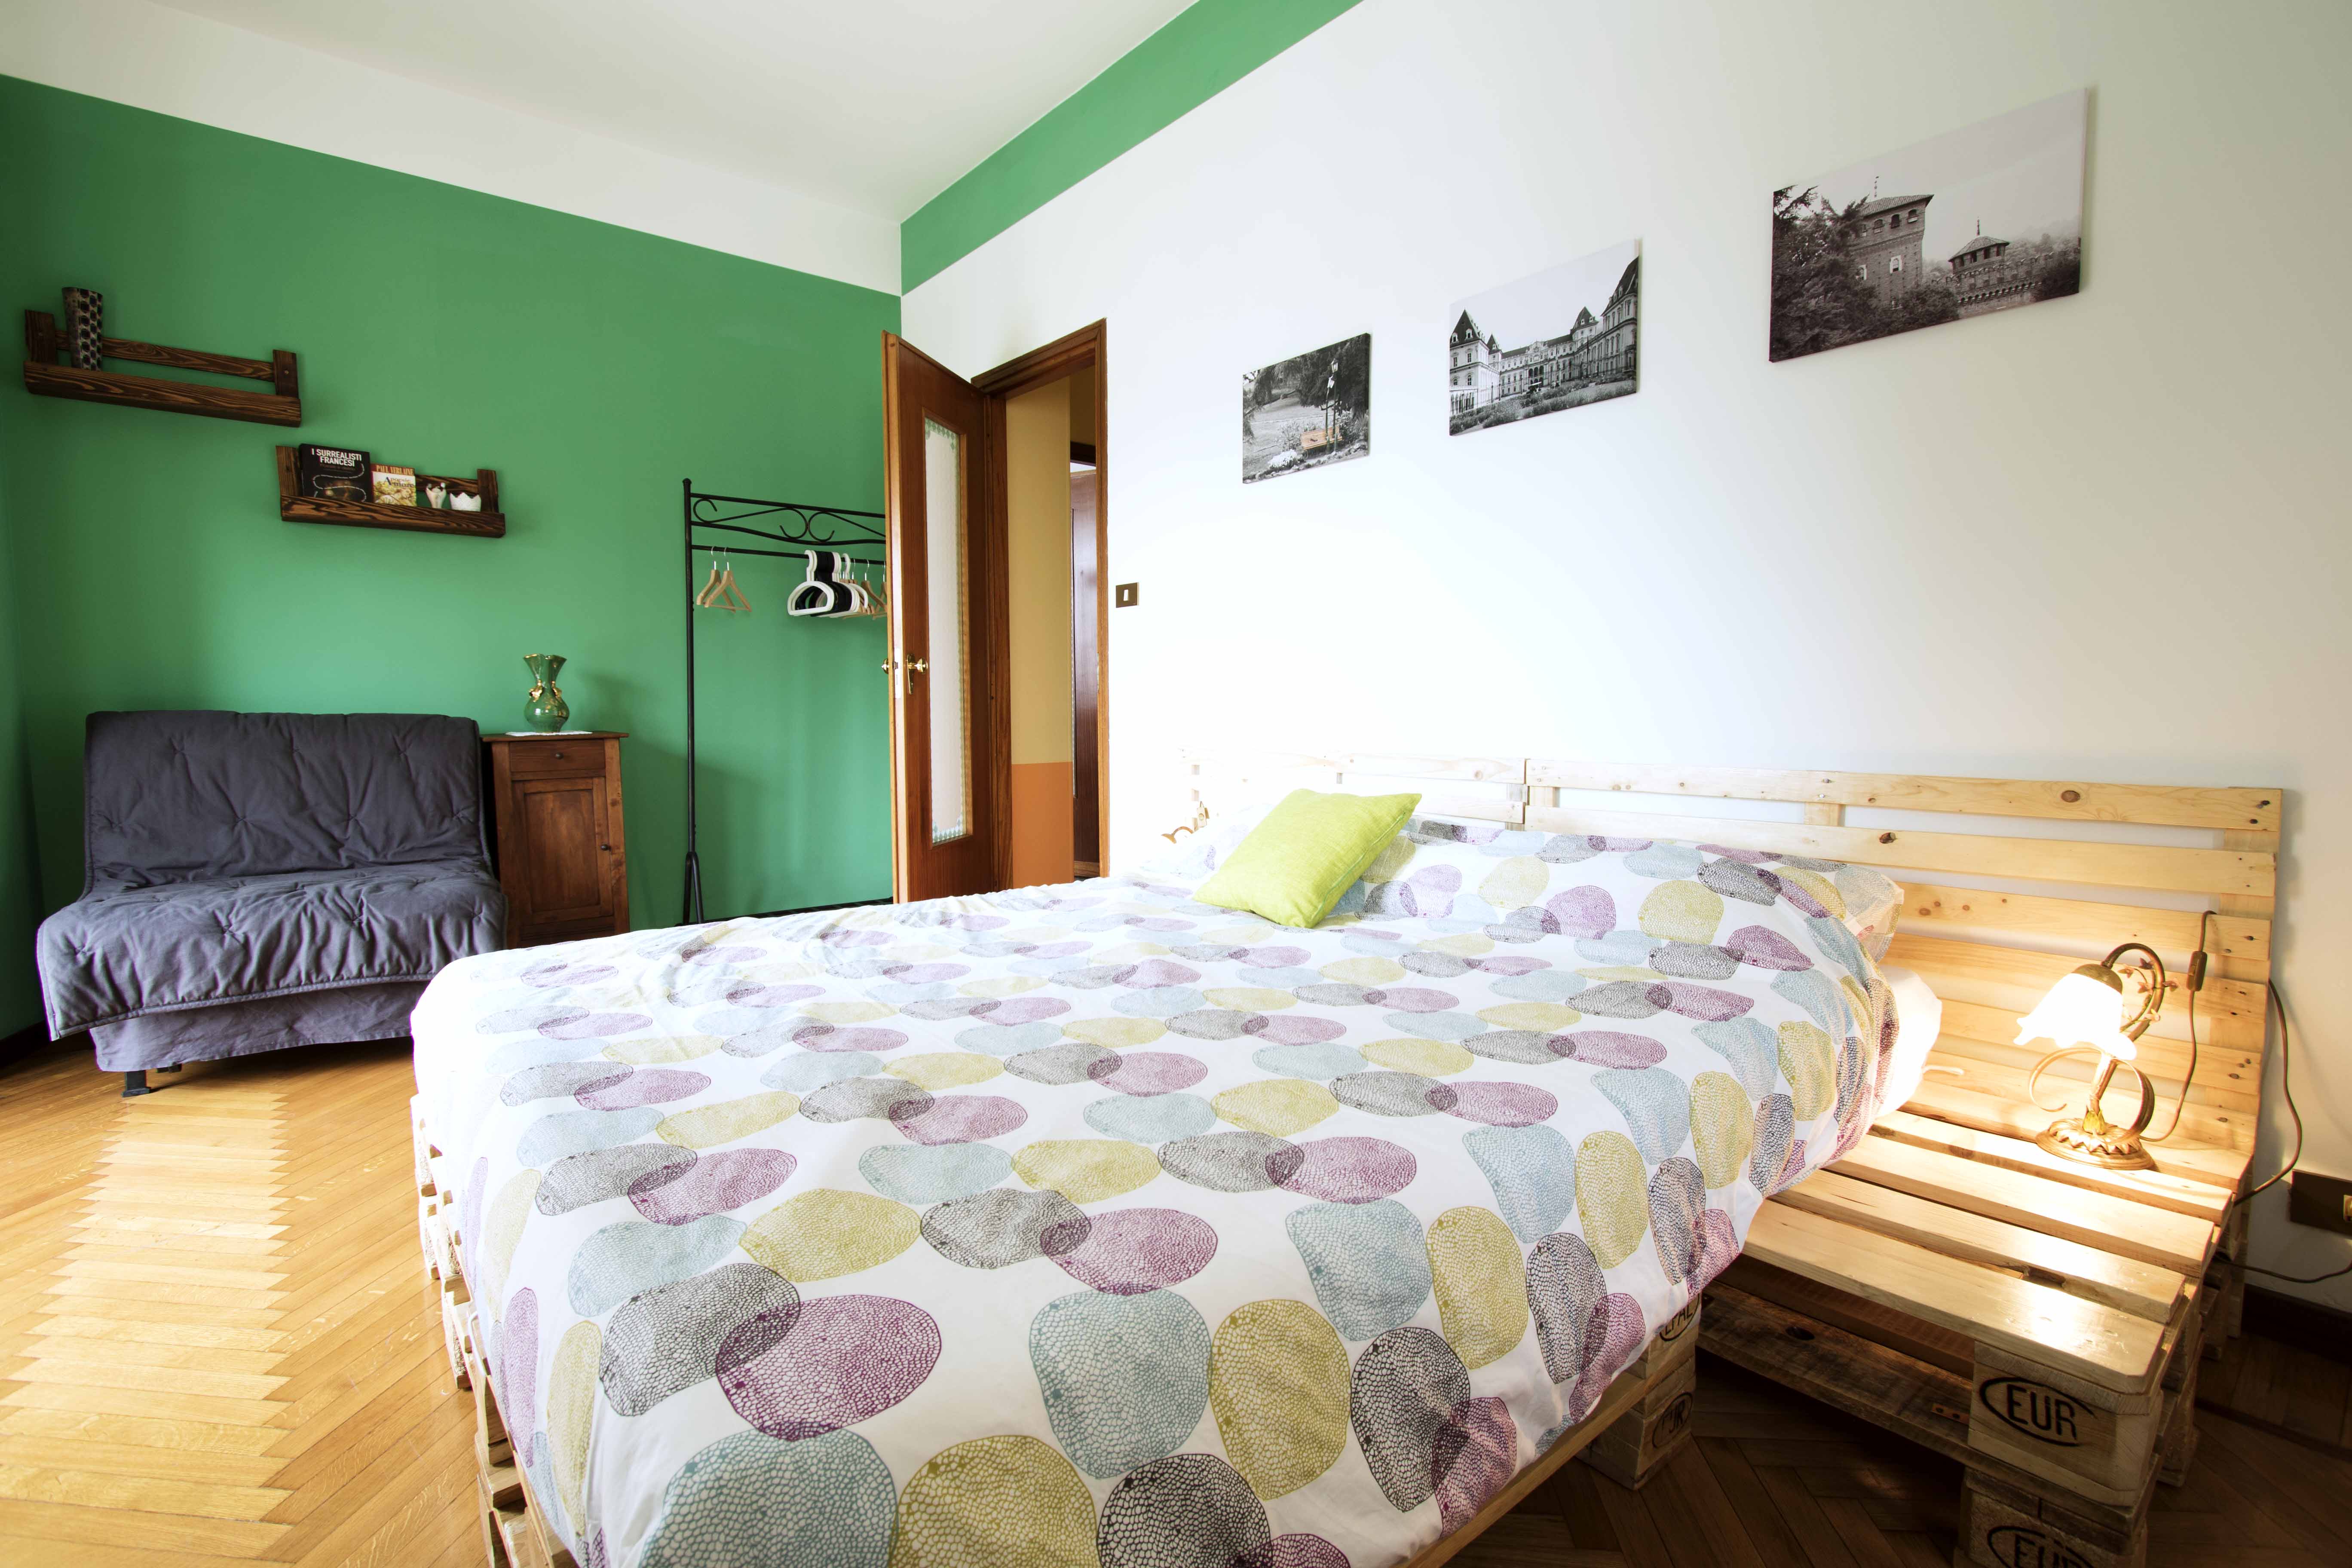 Dettaglio del comodino costruito con pallets, bed & breakfast ecosostenibile Ven Sì, Torino